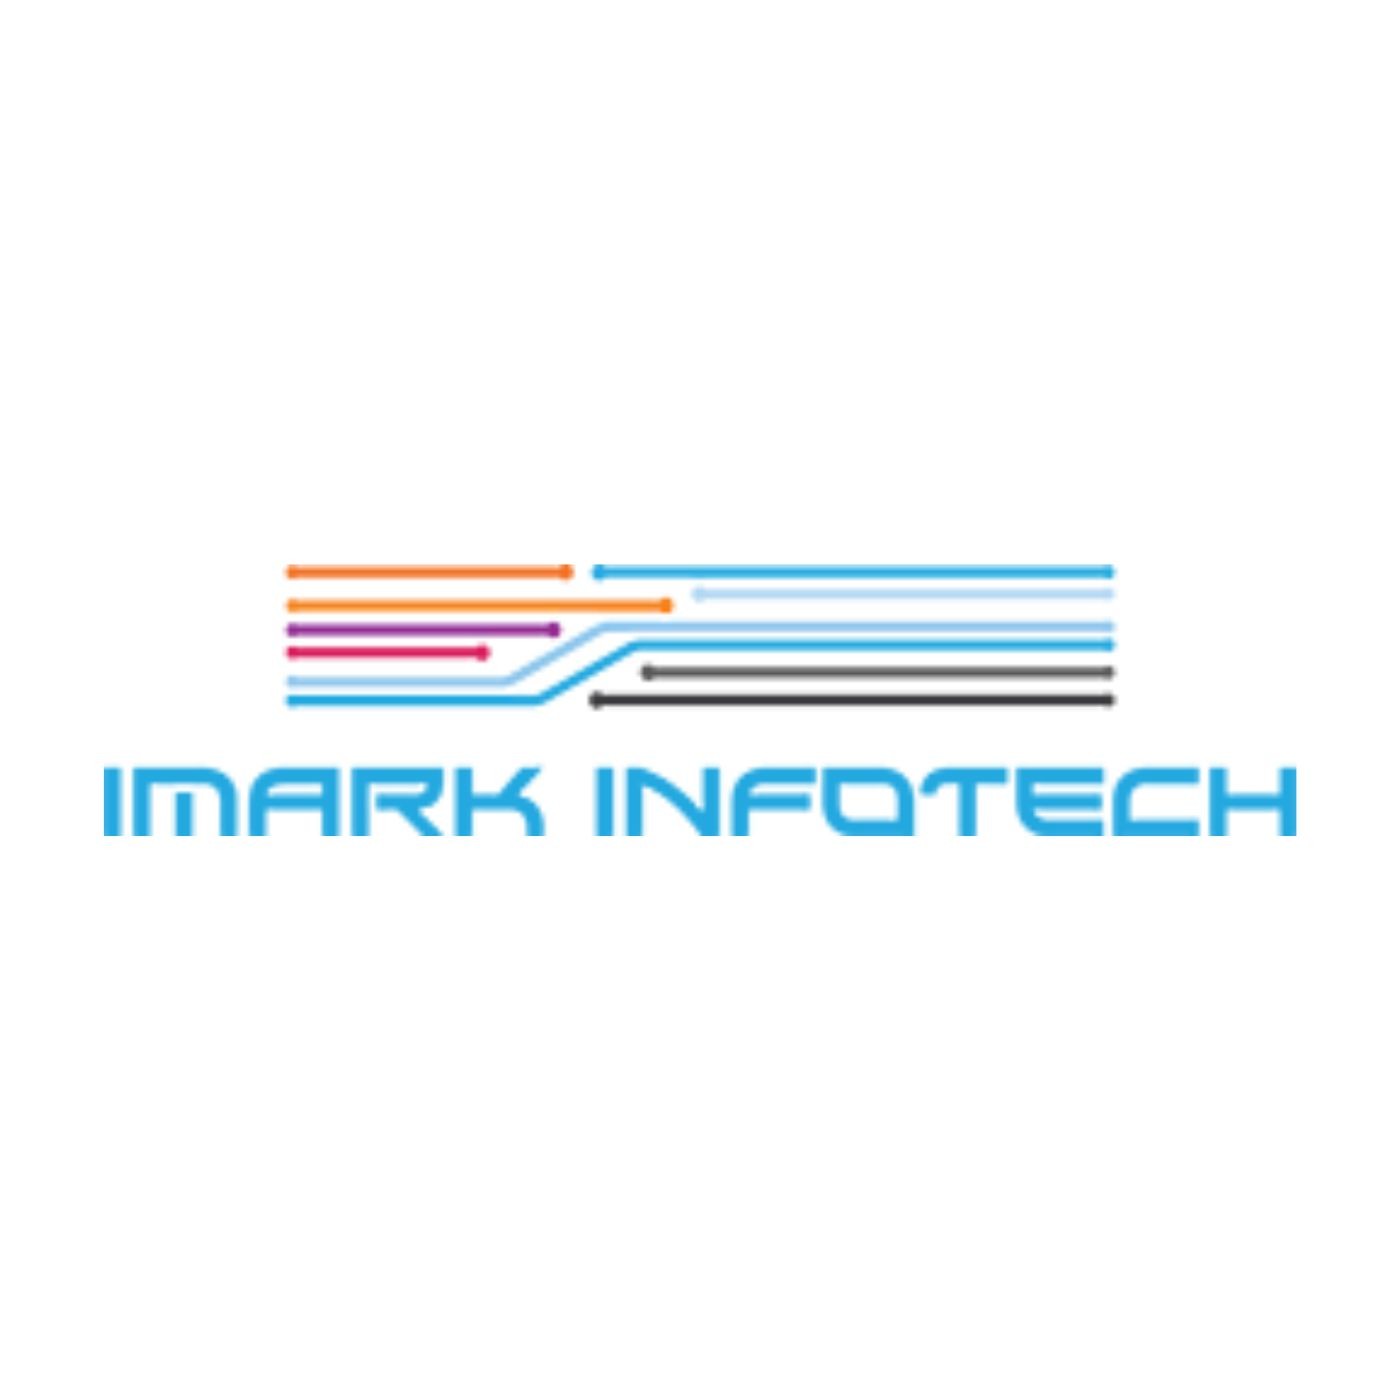 iMark Infotech Pinterest Ads